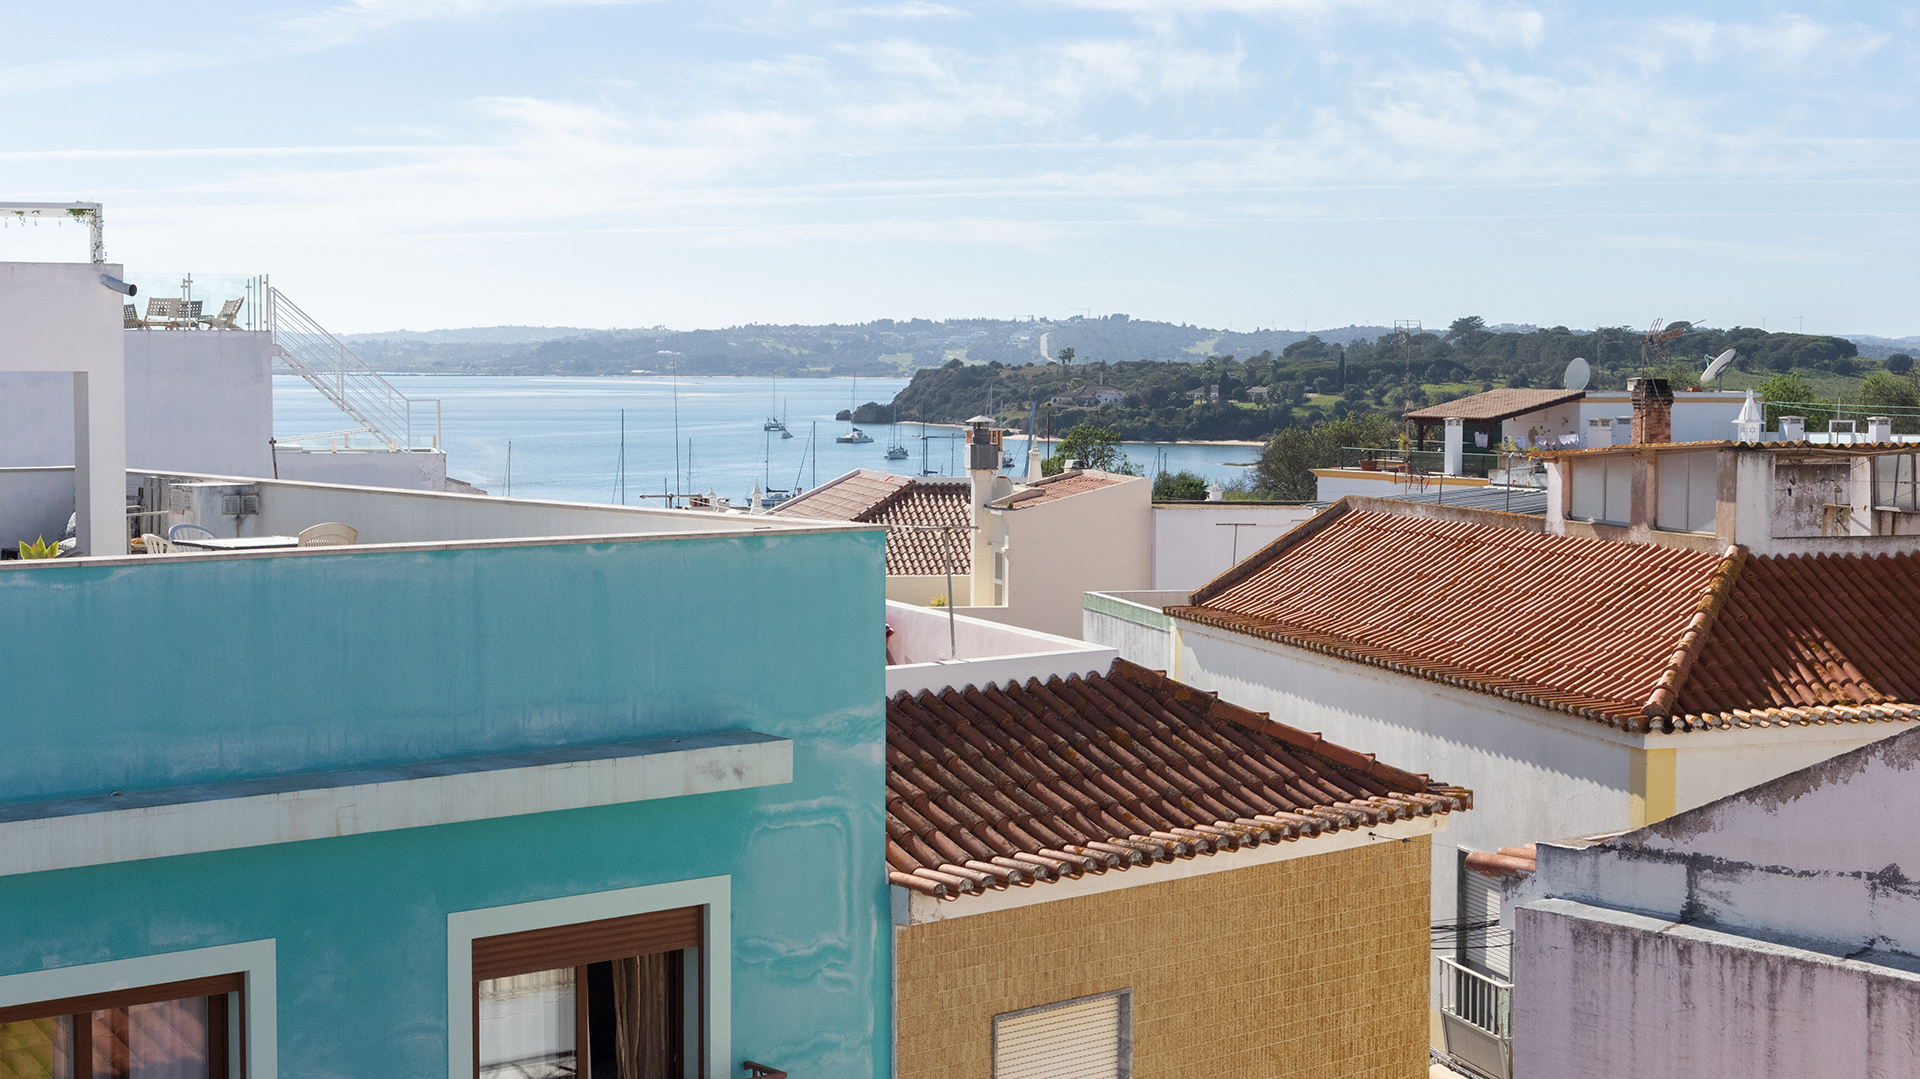 Moradia tradicional com 3 quartos e grandes terraços com vista, Alvor | LG2085 Moradia tradicional portuguesa renovada no coração de Alvor, com 3 quartos e 2 casas de banho e 2 terraços com vistas maravilhosas sobre esta bela vila piscatória do Algarve.